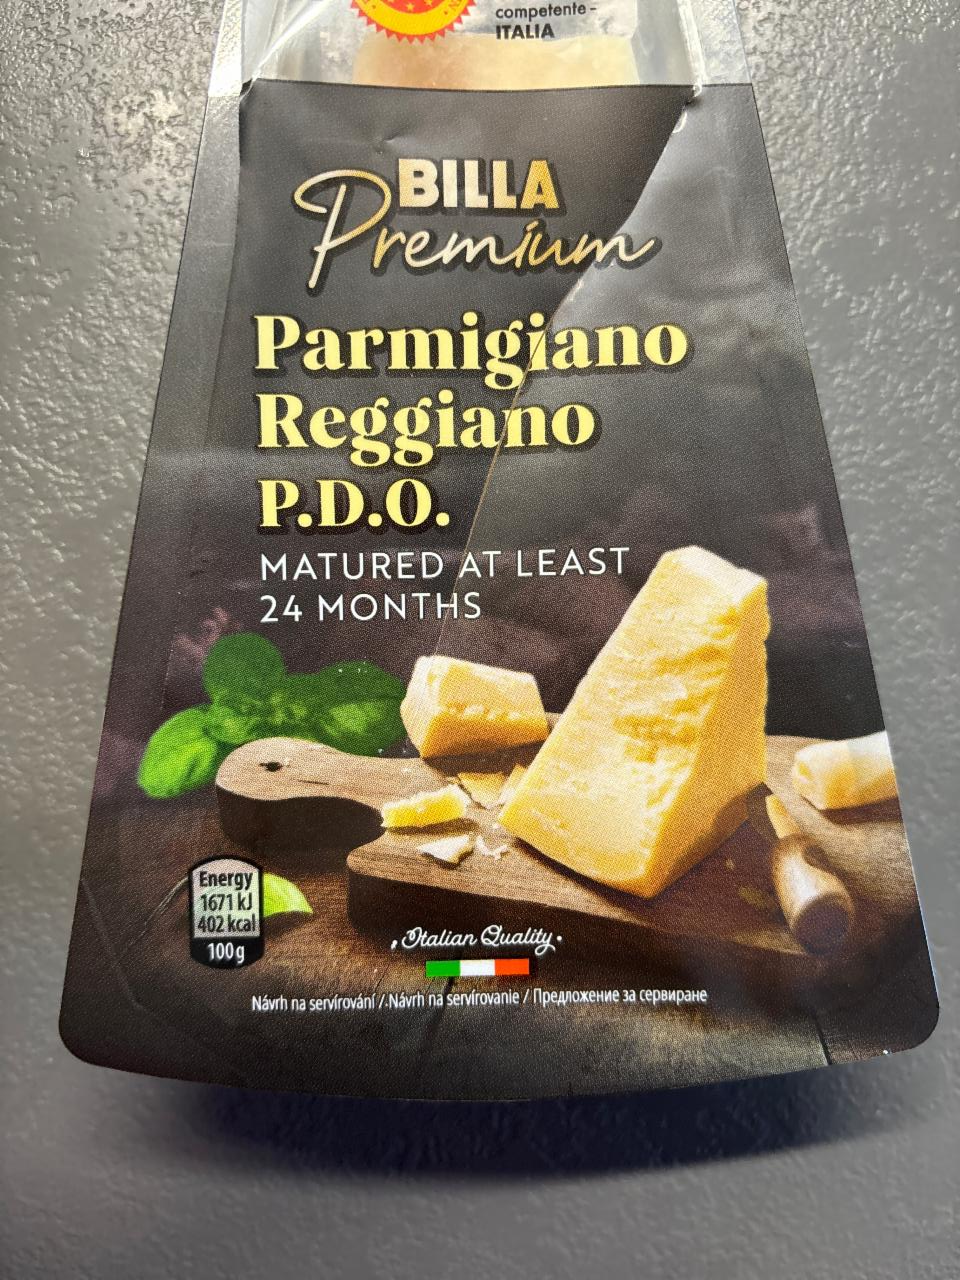 Fotografie - Parmigiano Reggiano D.O.P. Billa Premium